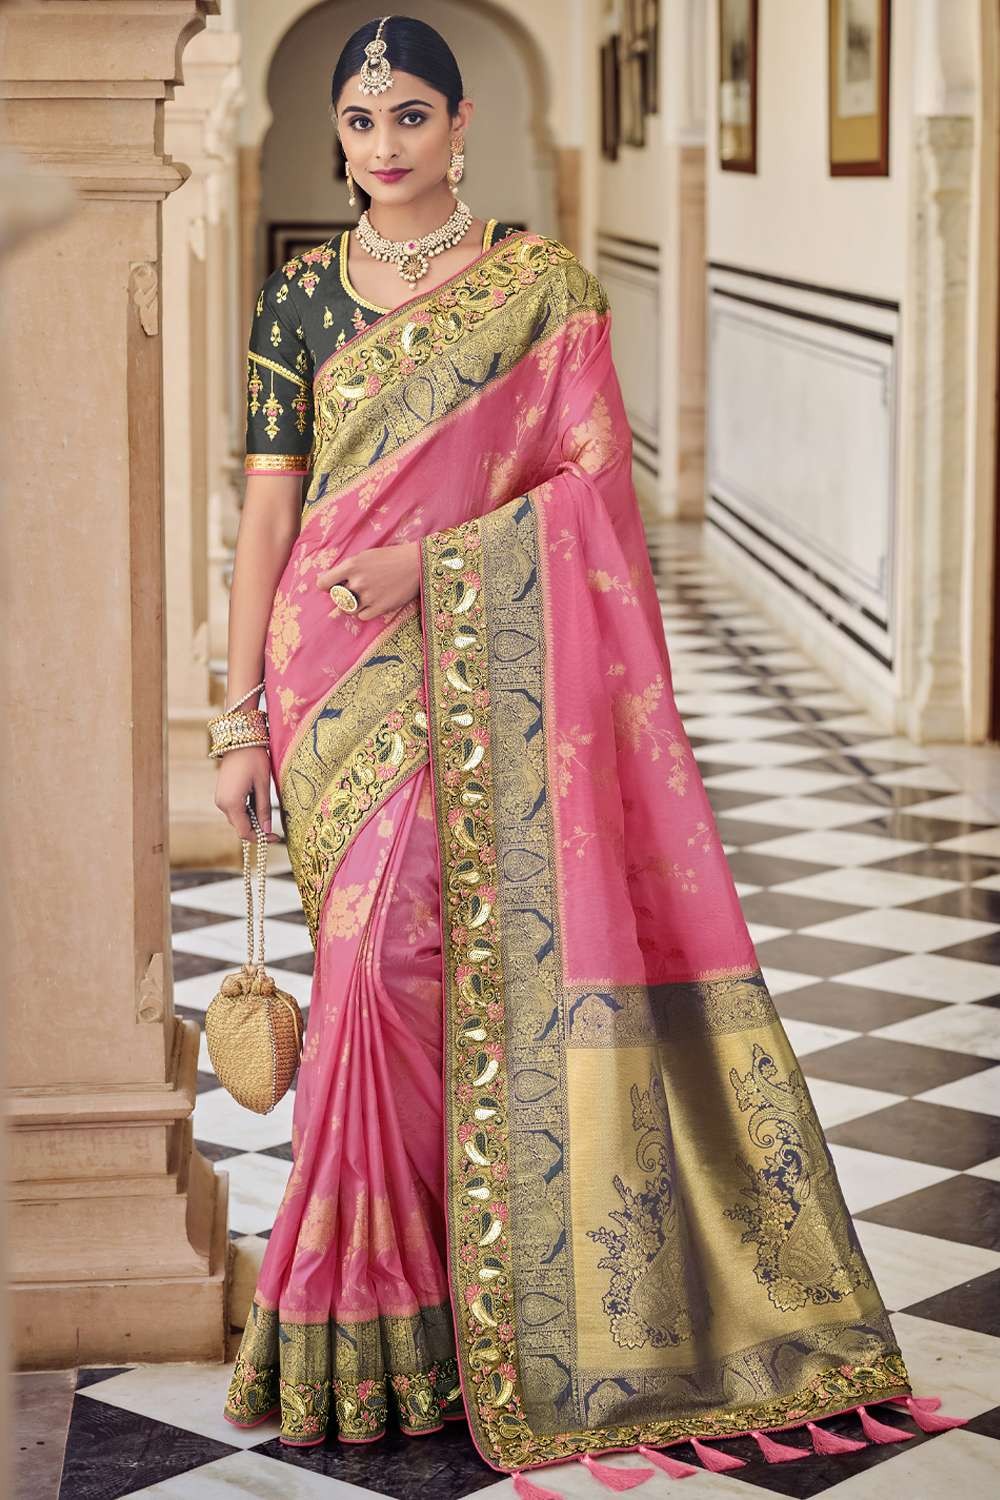 3 Must-Have Banarasi Soft Silk Saree Fabrics for You